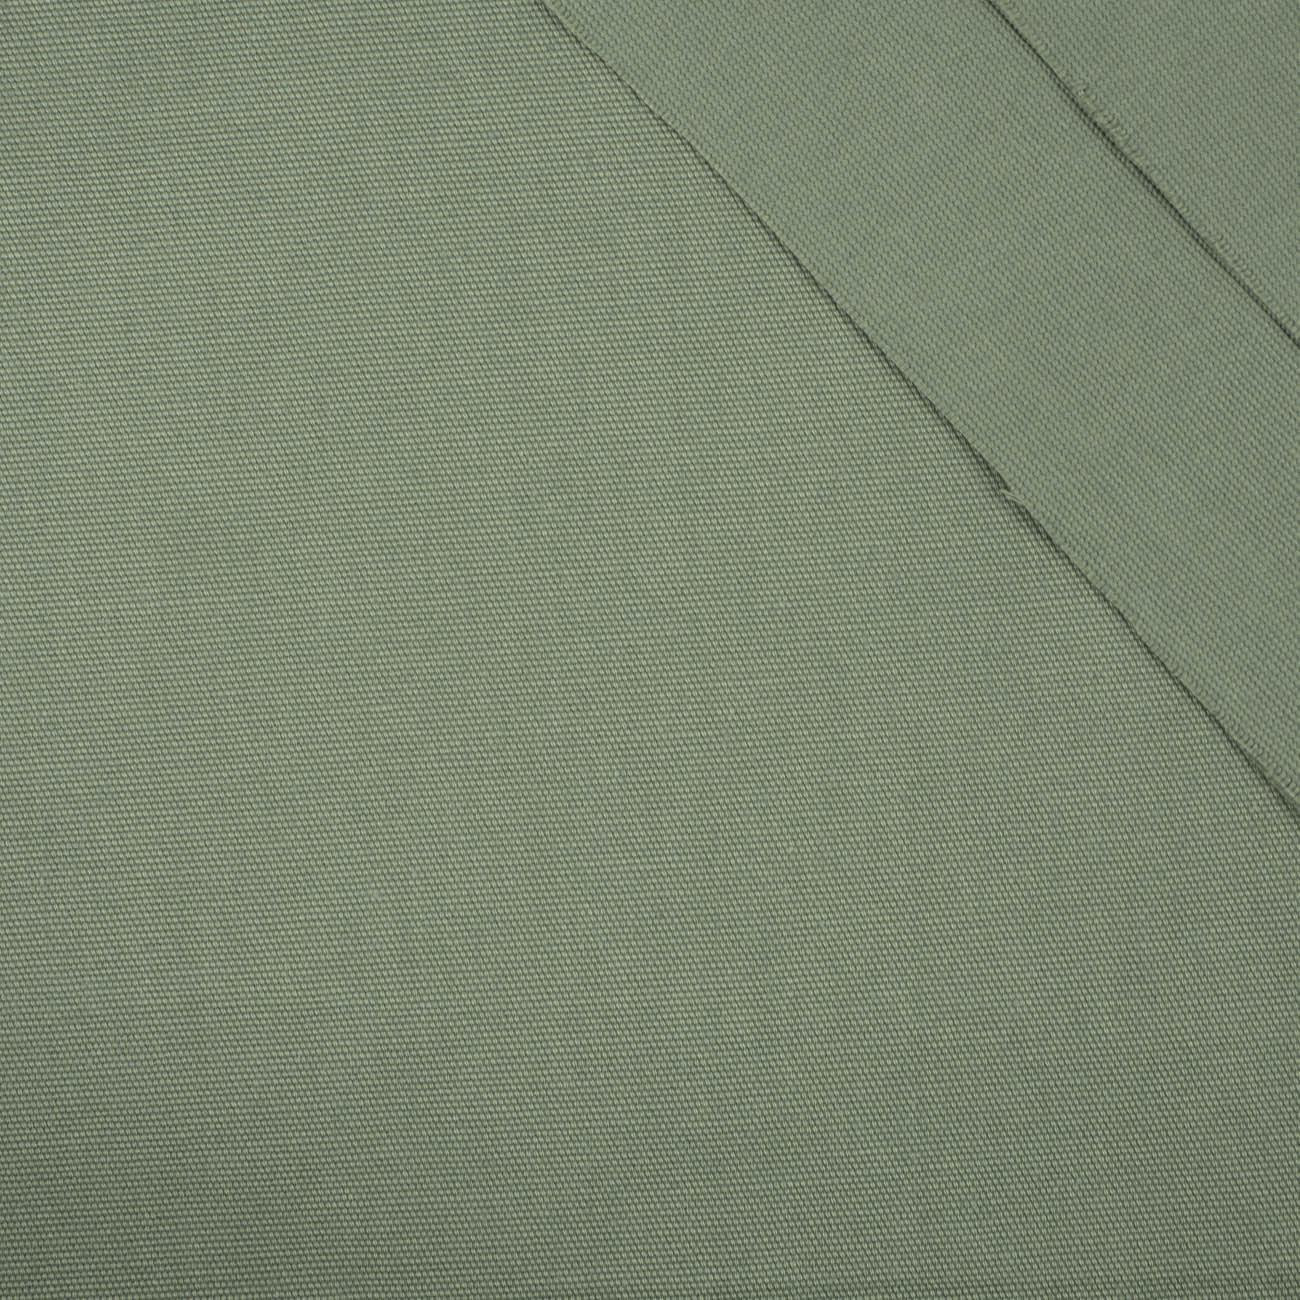 OLIVOVÁ ZELENÁ - džínová tkanina 200g